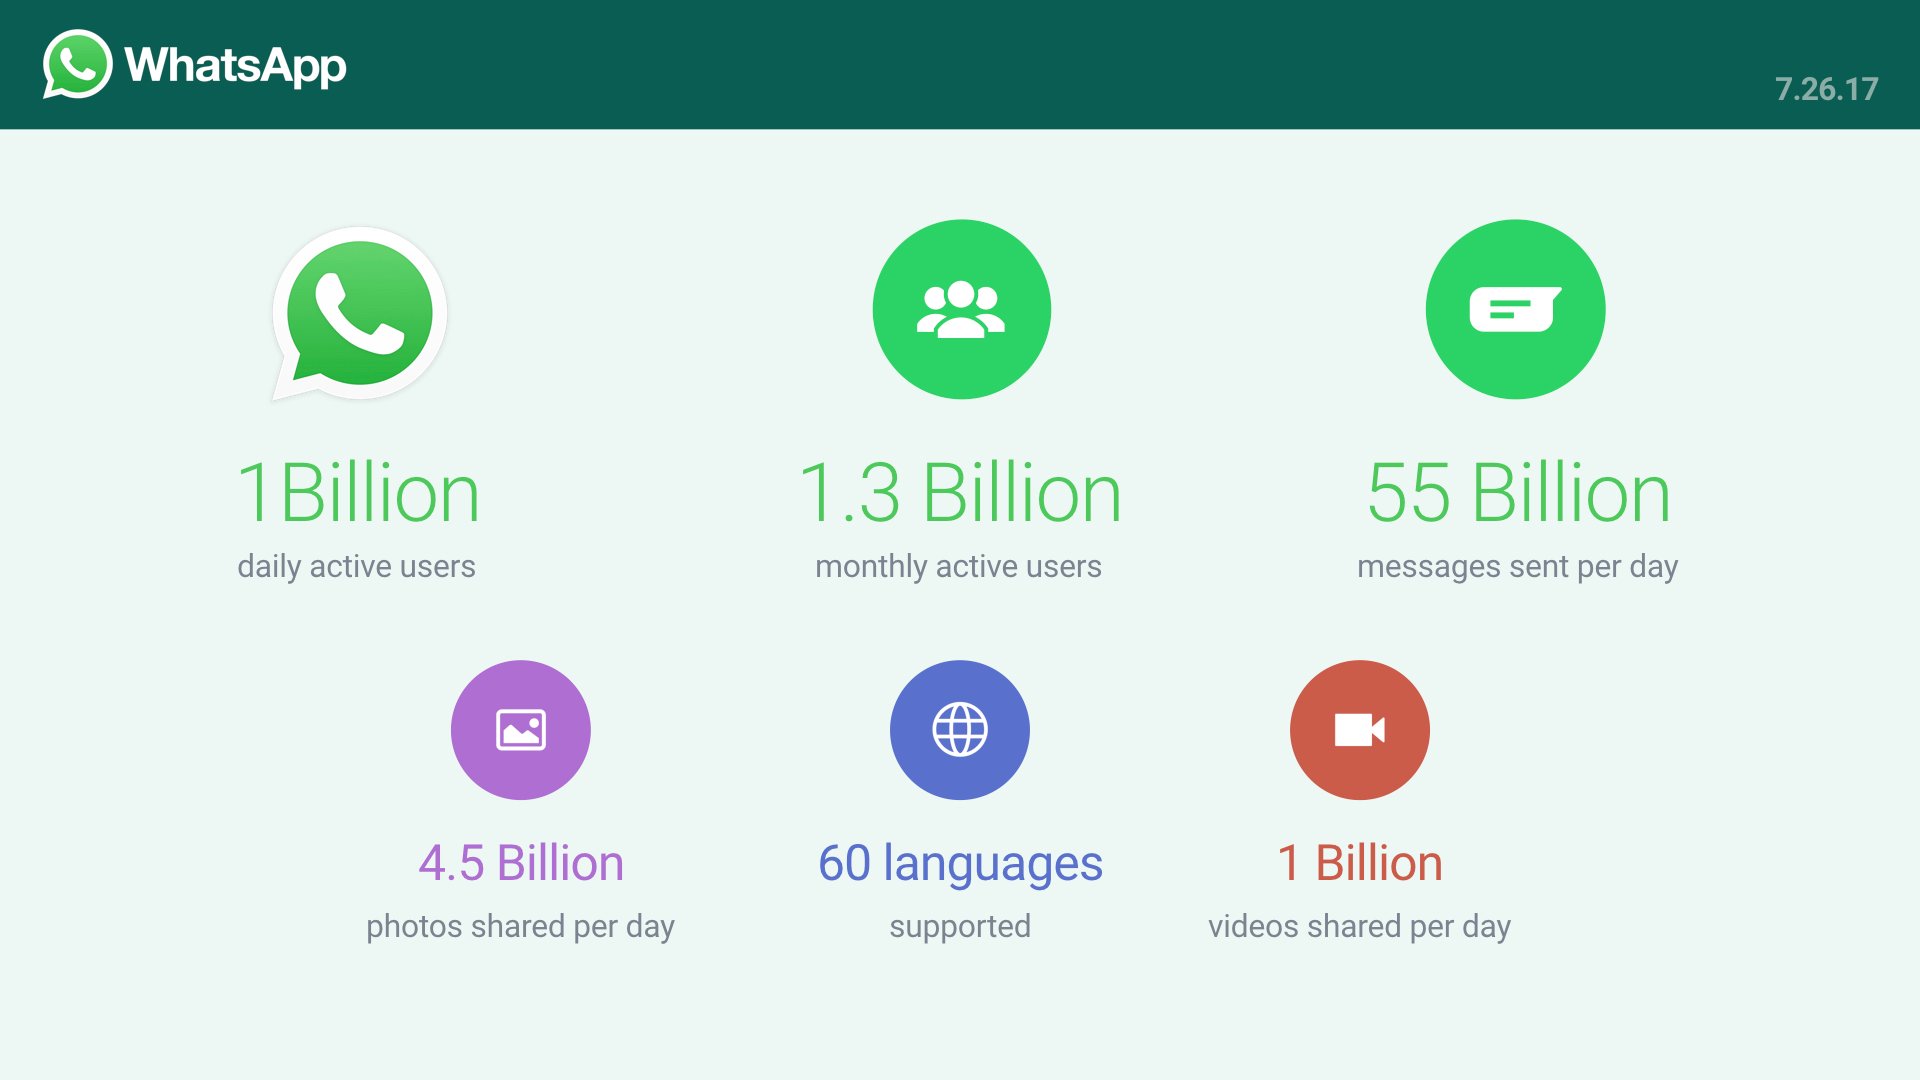 WhatsApp mỗi ngày có 1 tỷ người dùng thường xuyên, gửi 55 tỷ tin nhắn và 4,5 tỷ ảnh